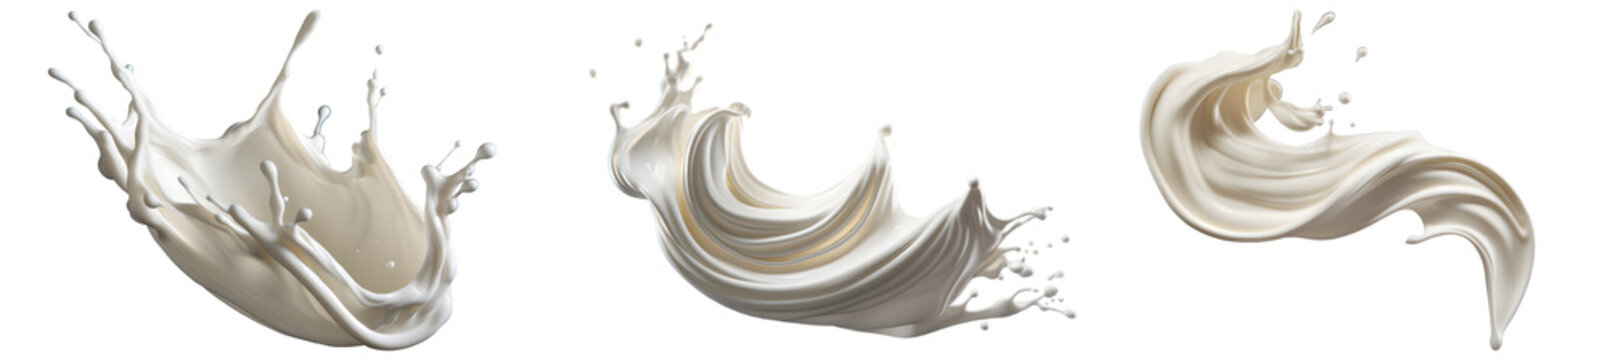 milk splashes set isolated on a transparent background, twisted creamy Yogurt or white paint wave swirl splashing clipart PNG, liquid splashes	